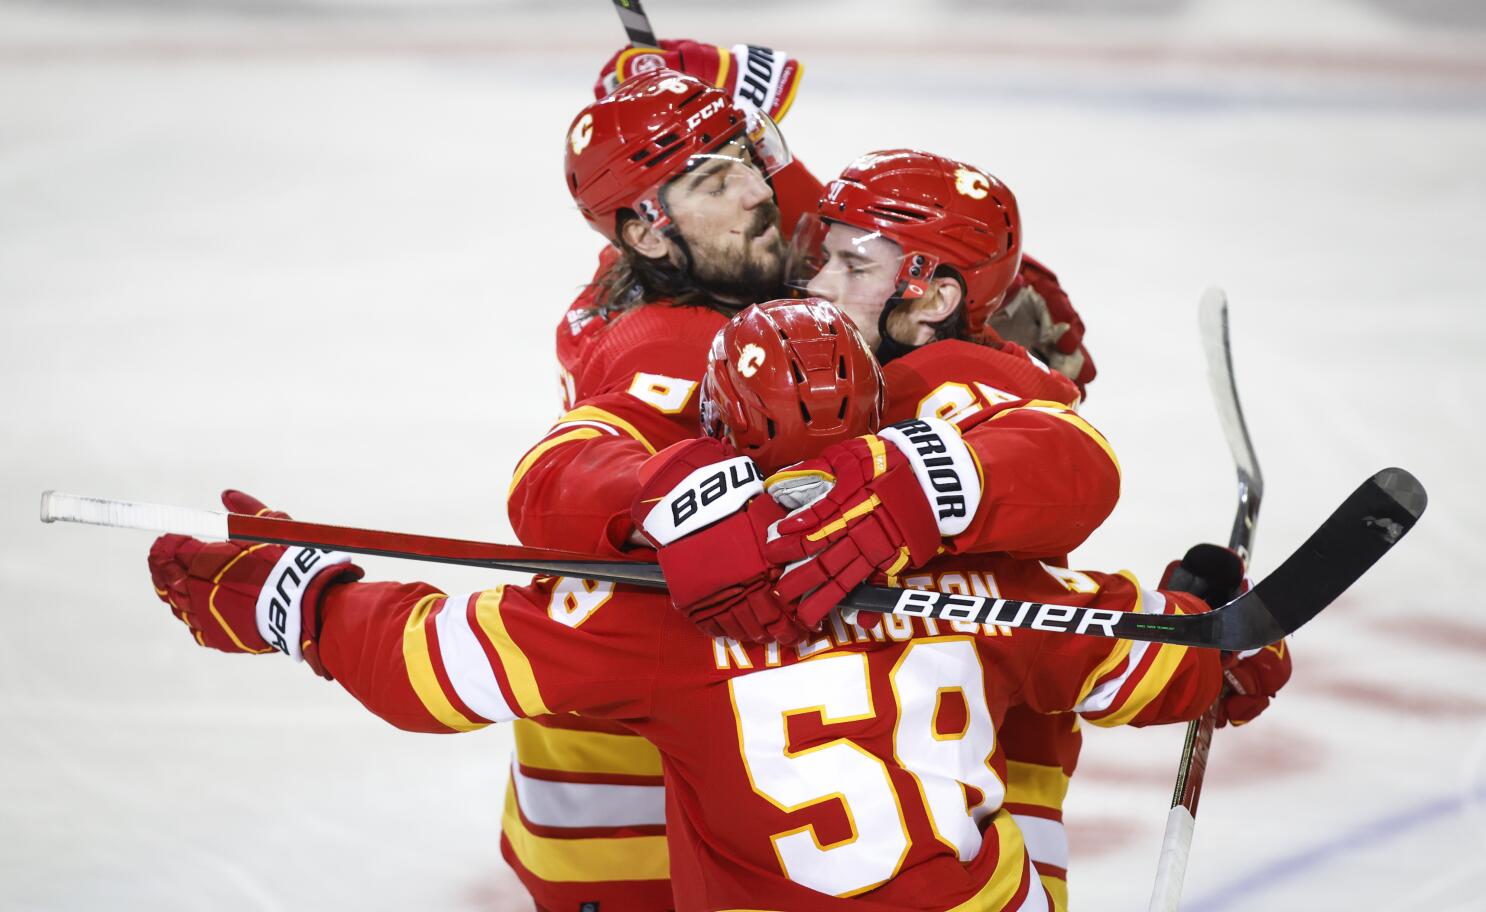 Former longtime Calgary Flames captain named captain of NHL's newest team  the Seattle Kraken